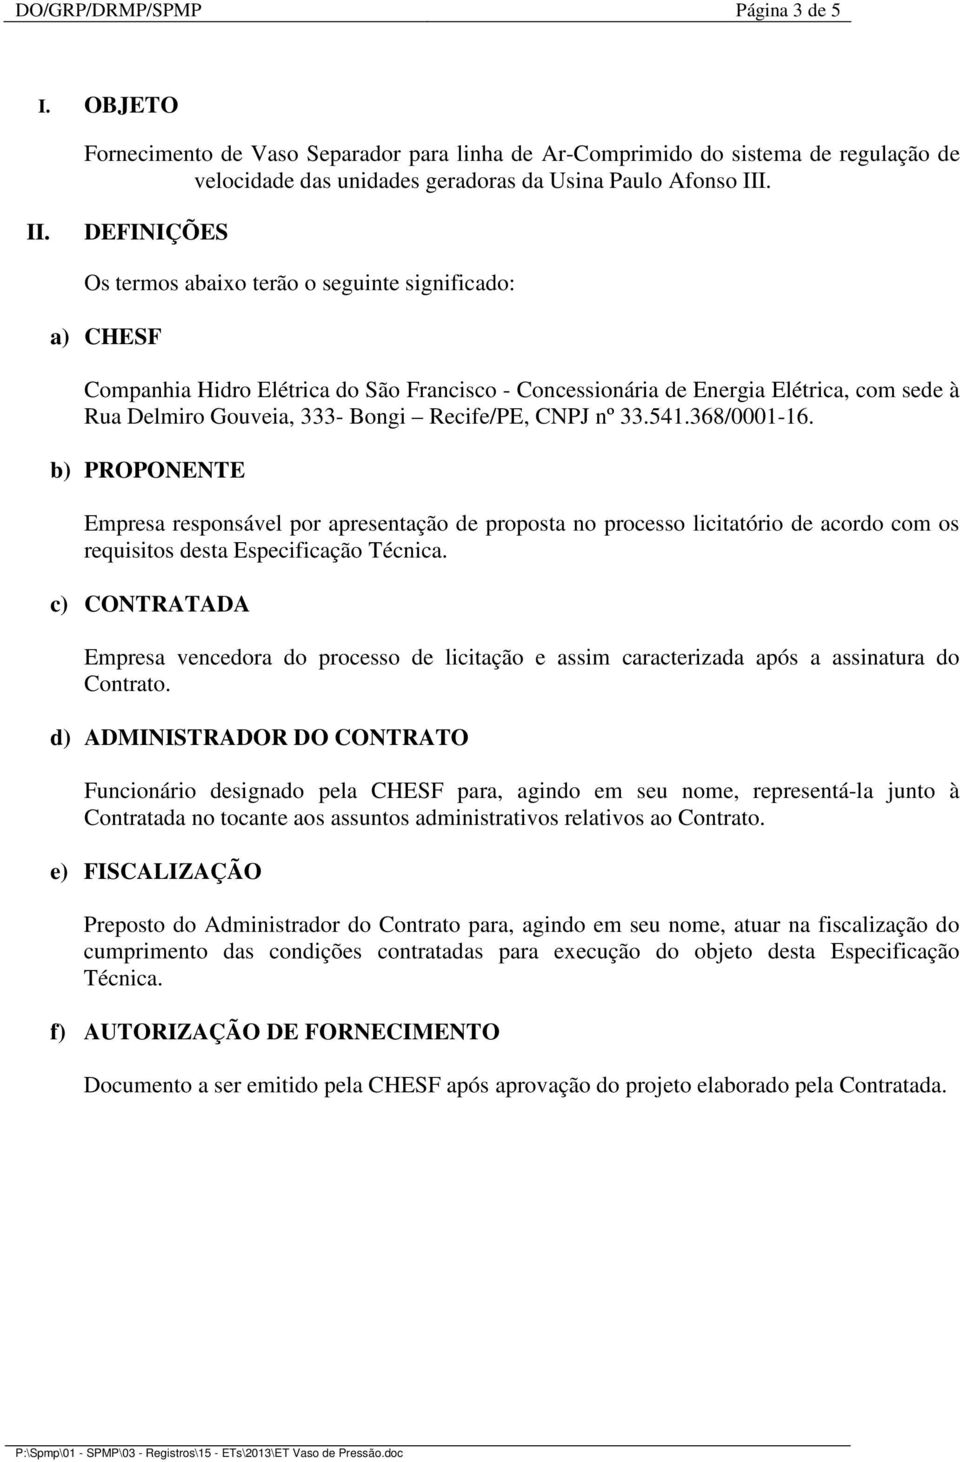 Recife/PE, CNPJ nº 33.541.368/0001-16. b) PROPONENTE Empresa responsável por apresentação de proposta no processo licitatório de acordo com os requisitos desta Especificação Técnica.